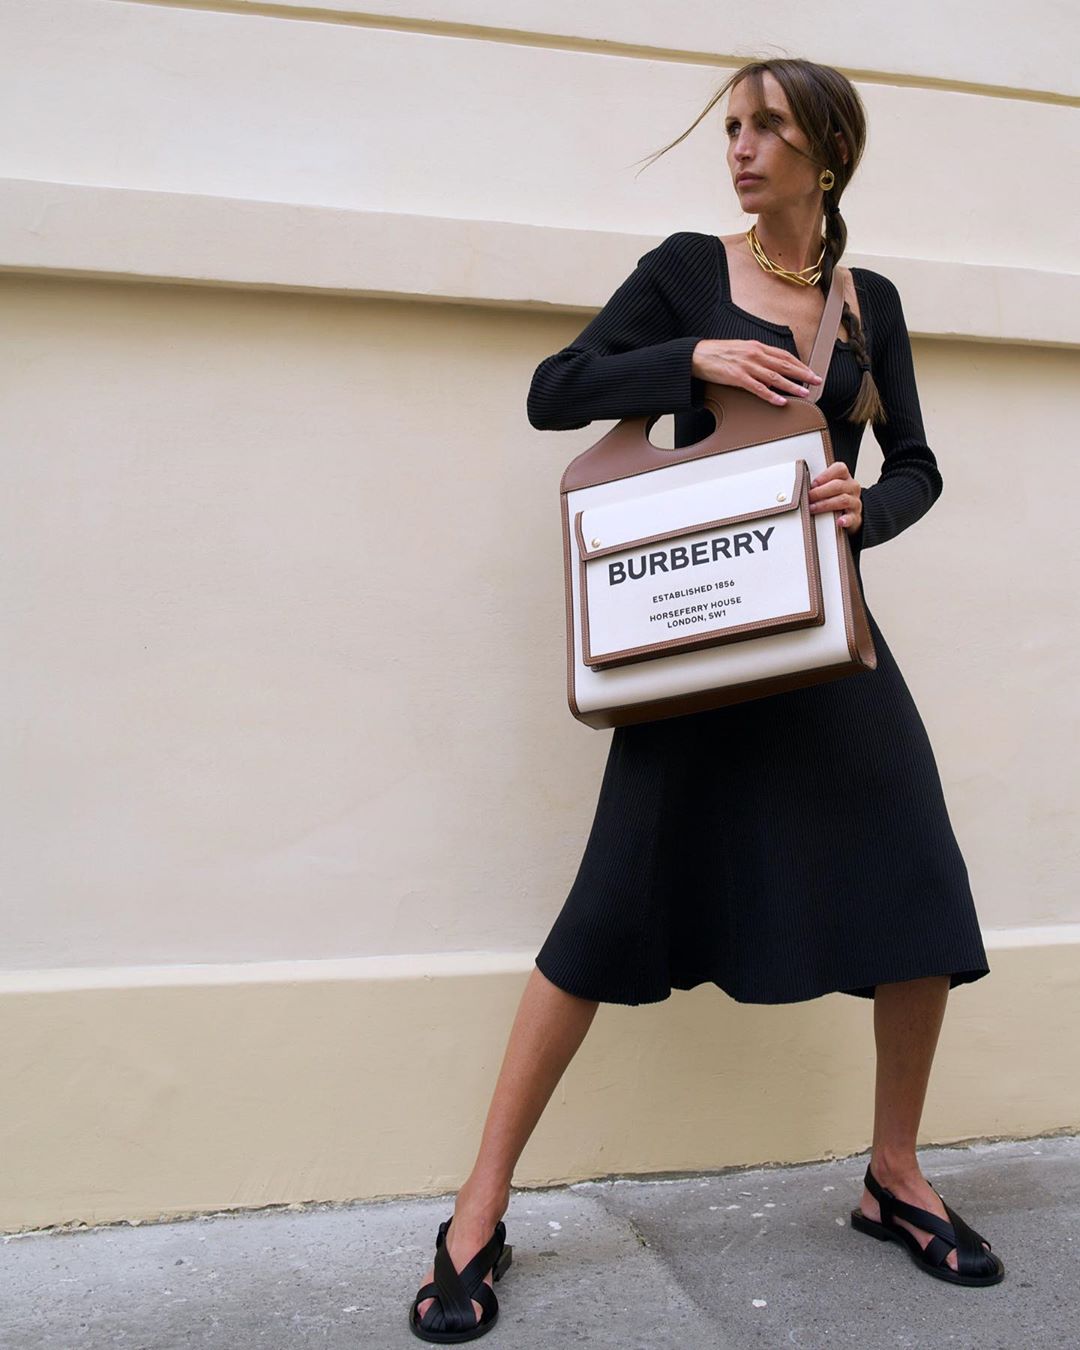 chloe harrouche burberry pocket bag instagram 1 - “Take note” 10 chiếc túi xách tiện lợi và sang trọng hàng đầu cho cô nàng công sở